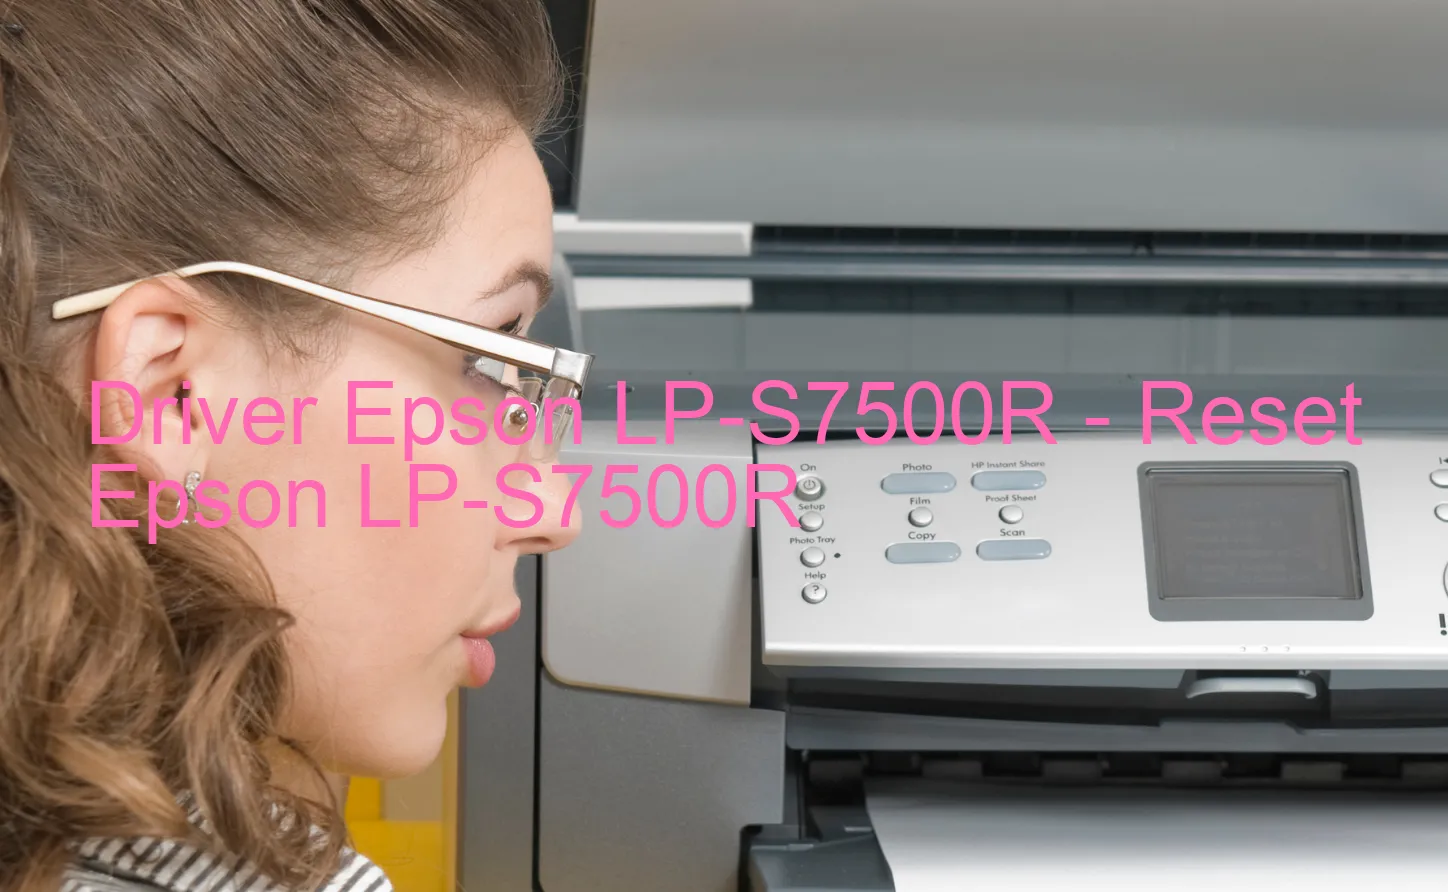 Epson LP-S7500Rのドライバー、Epson LP-S7500Rのリセットソフトウェア